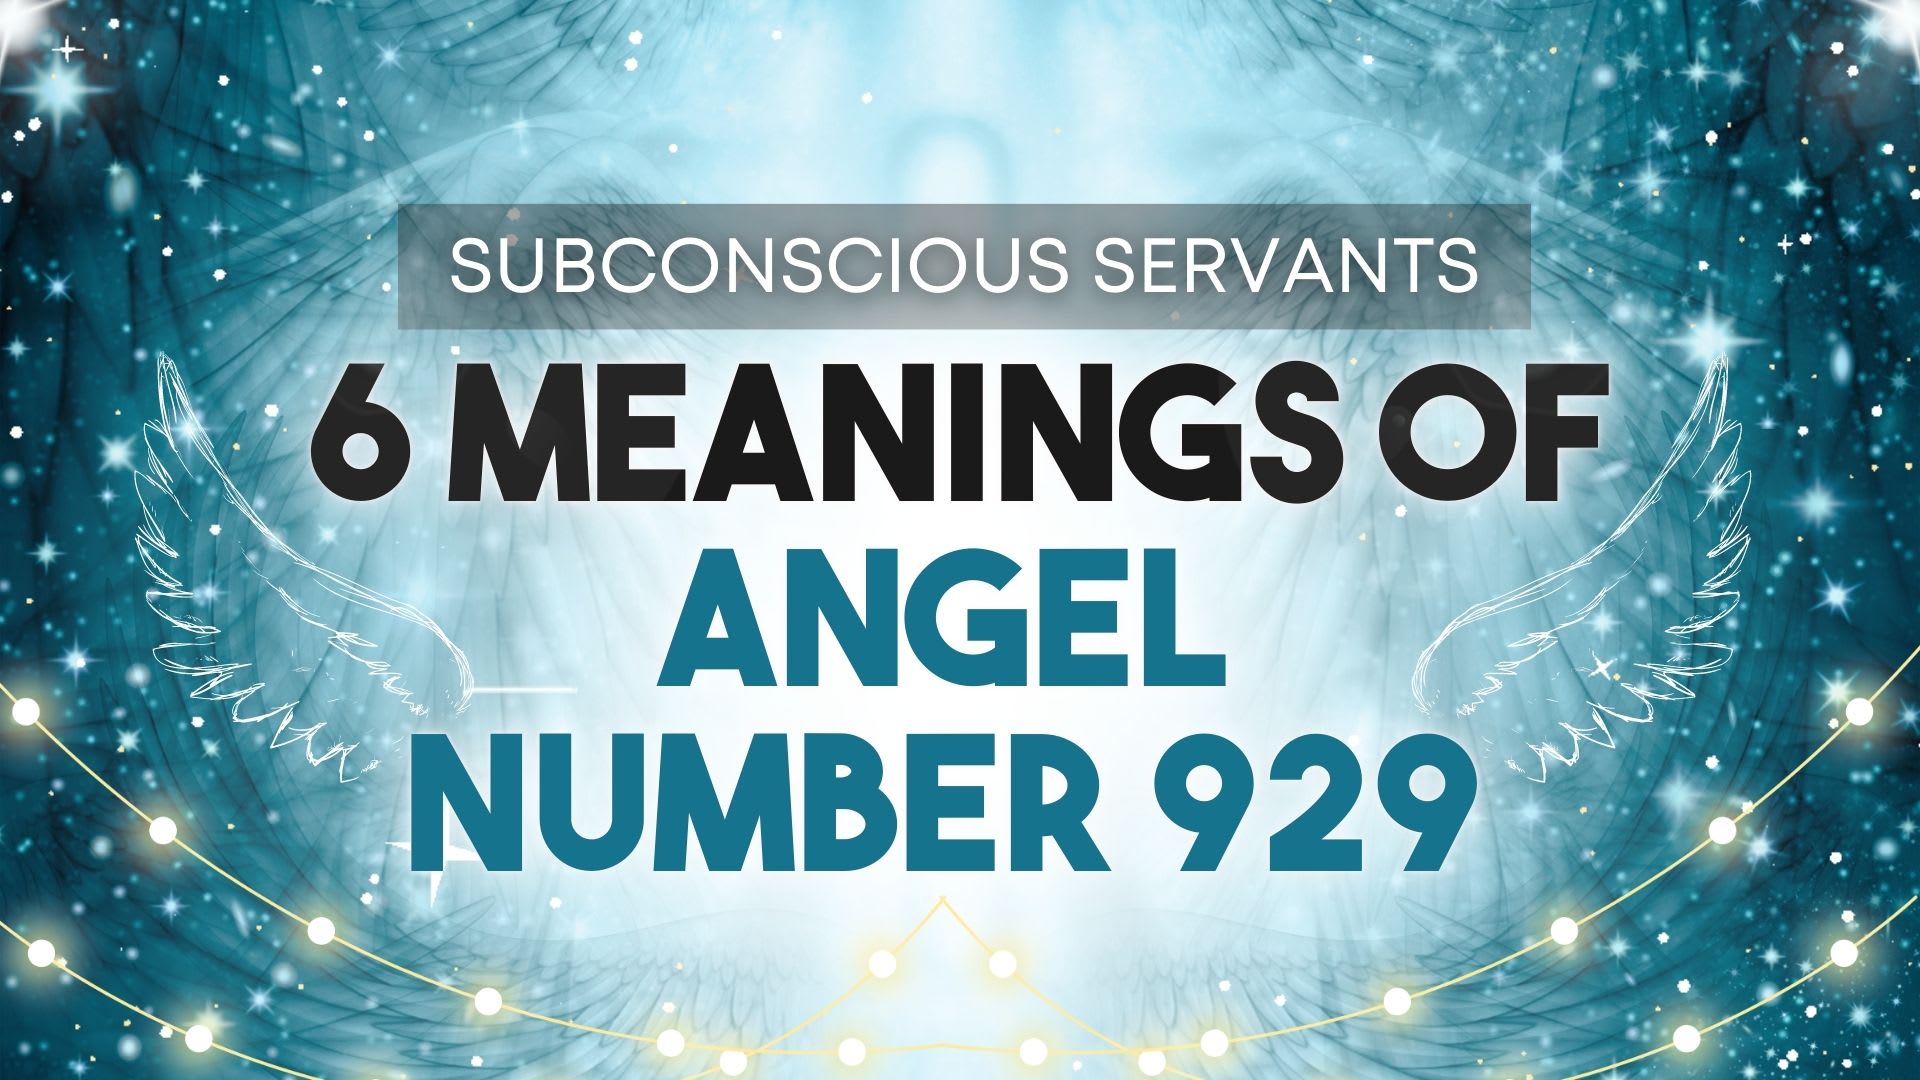  Anxo número 929: significado, significado, manifestación, diñeiro, chama xemelga e amor